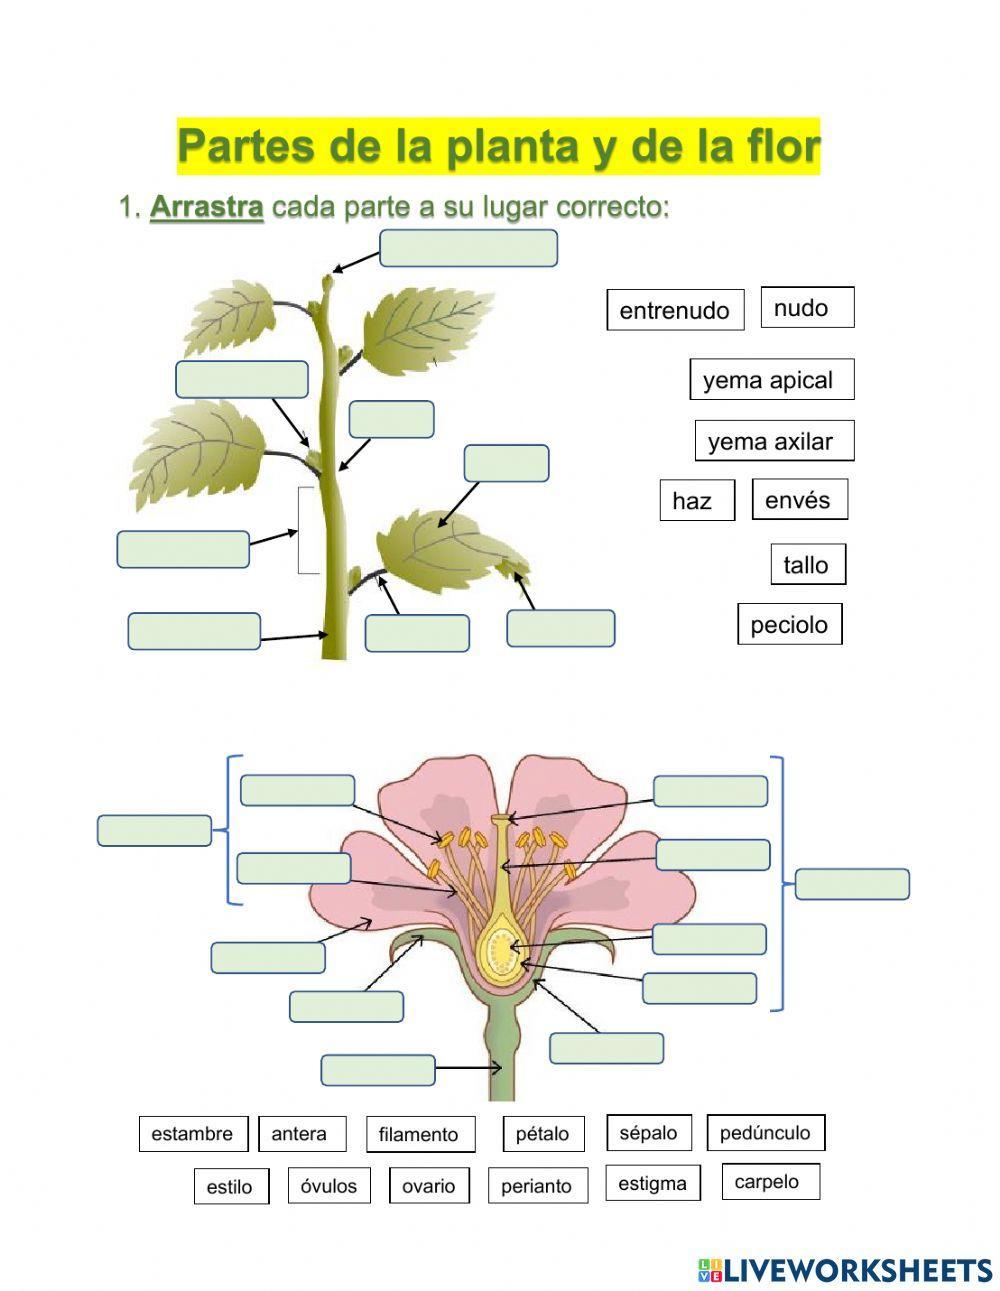 Partes de la planta y de la flor